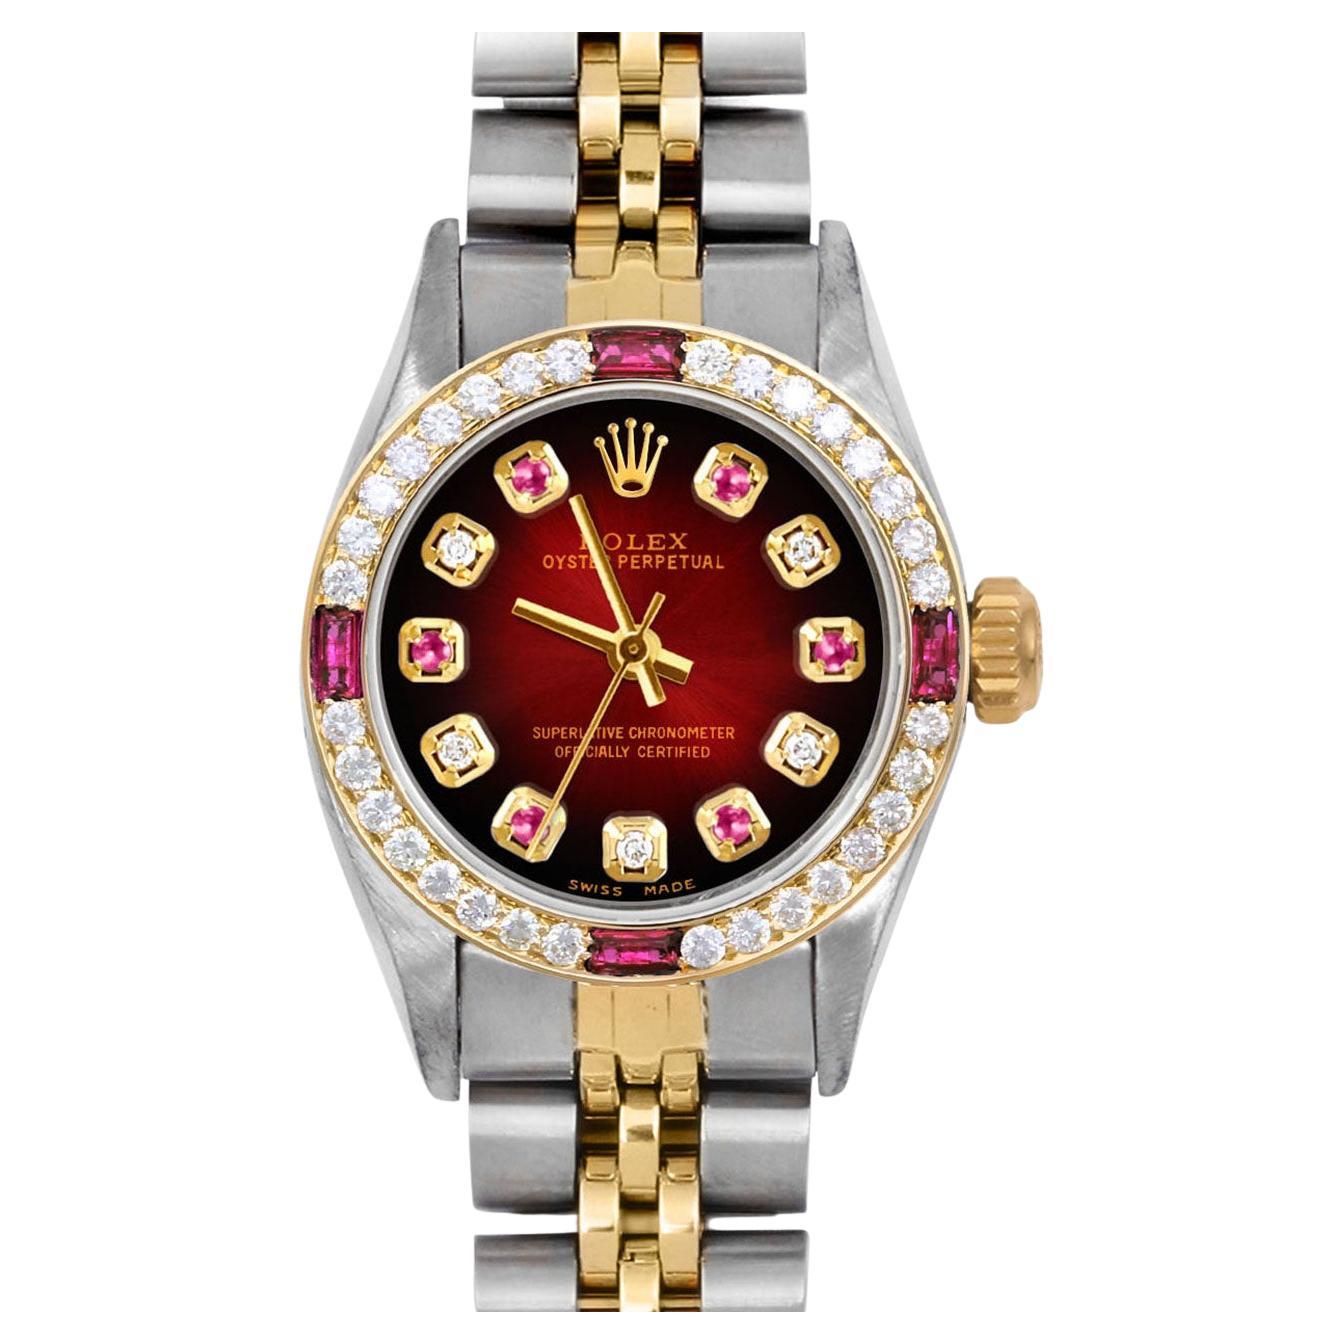 Rolex Montre Oyster Perpetual rouge avec cadran en rubis, diamants et rubis et lunette en diamants, pour femmes